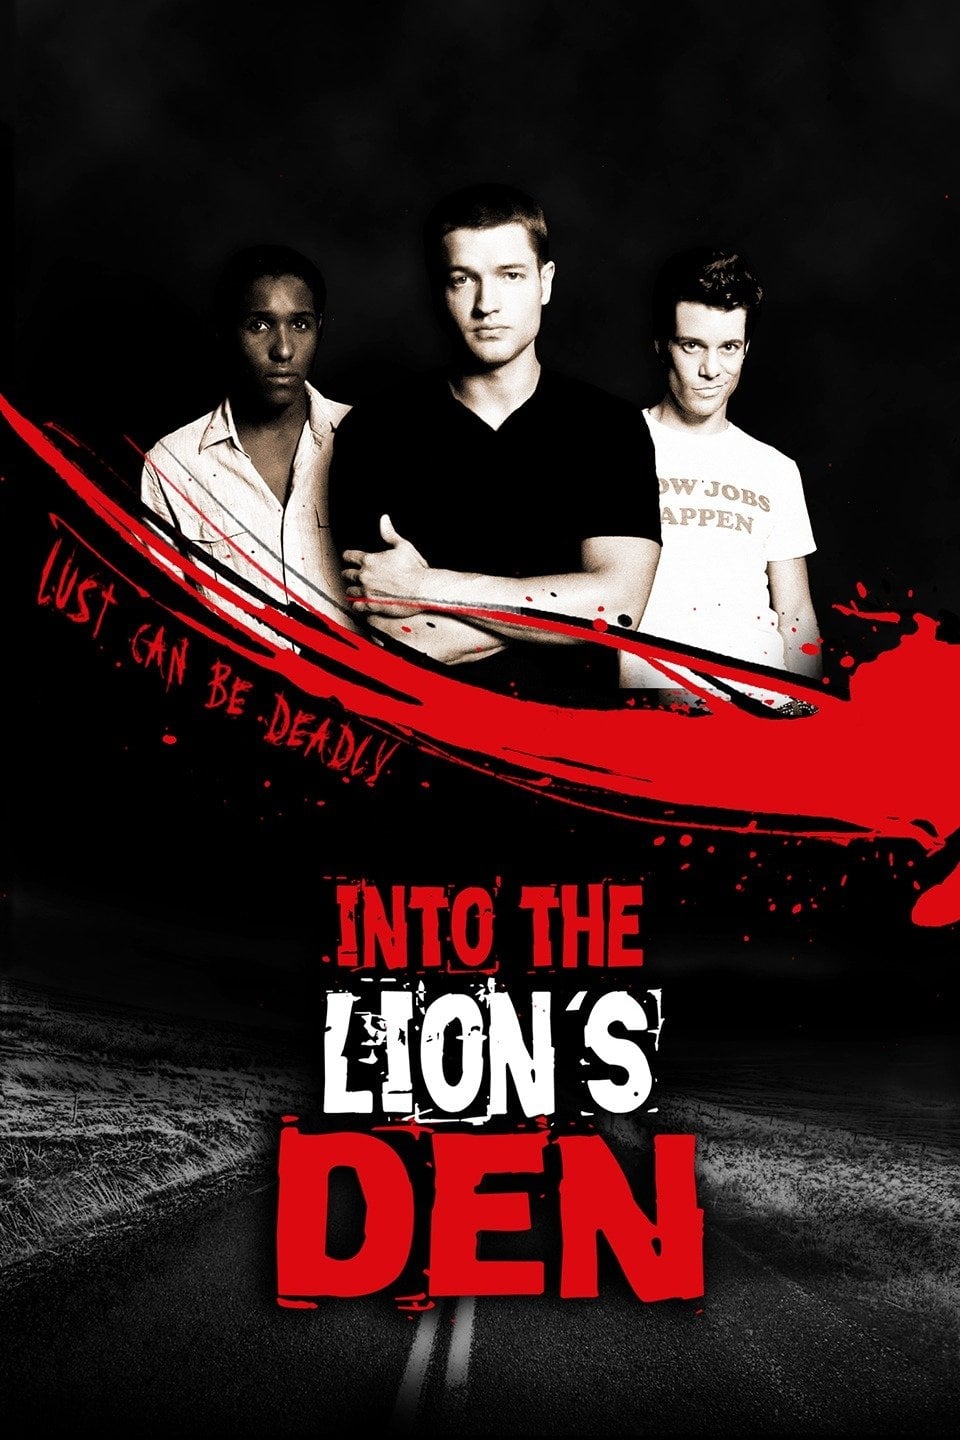 Into The Lion's Den